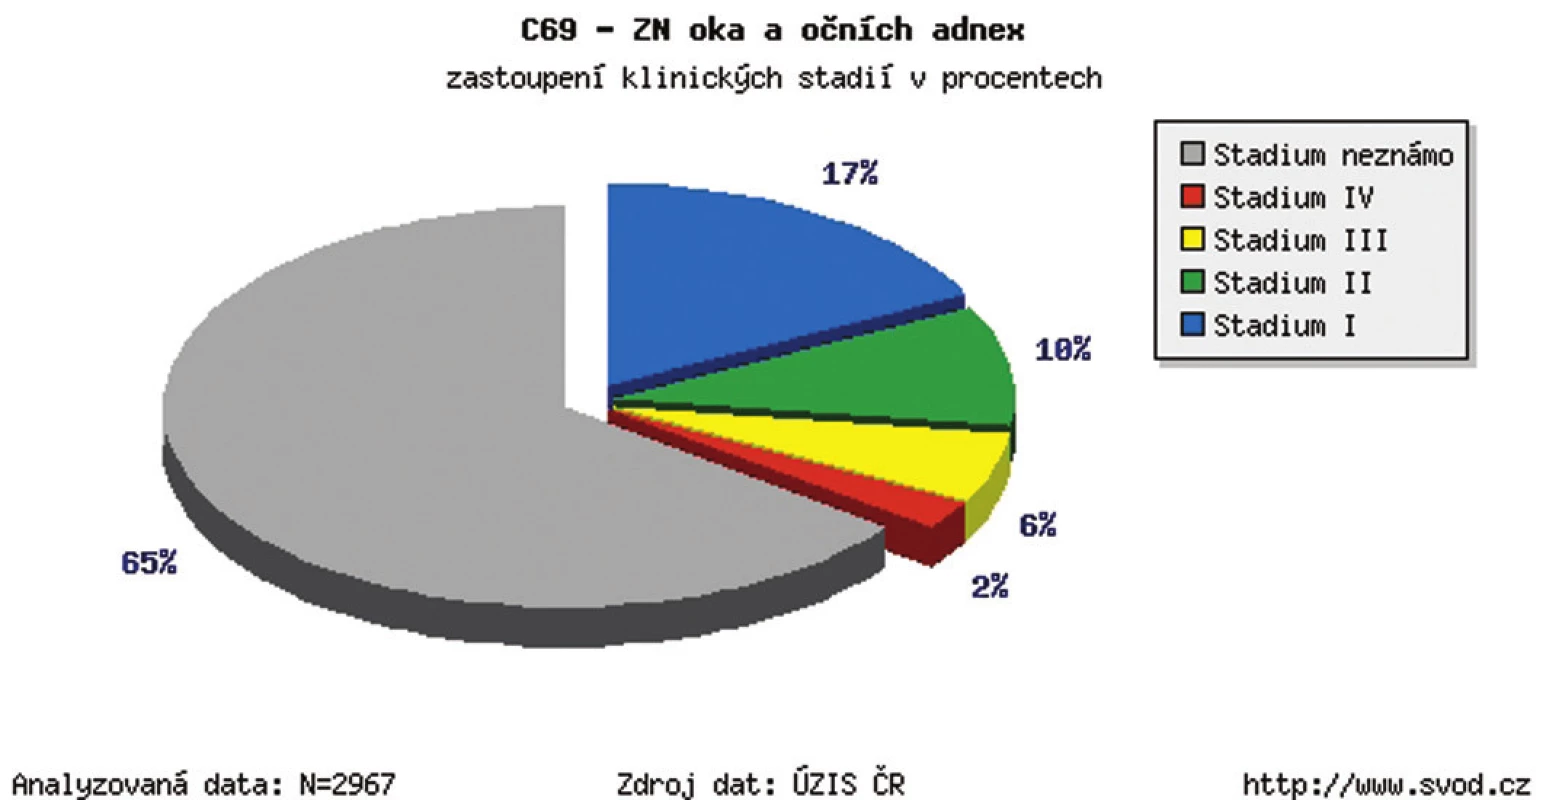 Zhubný nádor oka a adnex v ČR – zastúpenie klinických štádií v percentách v r. 1977–2009